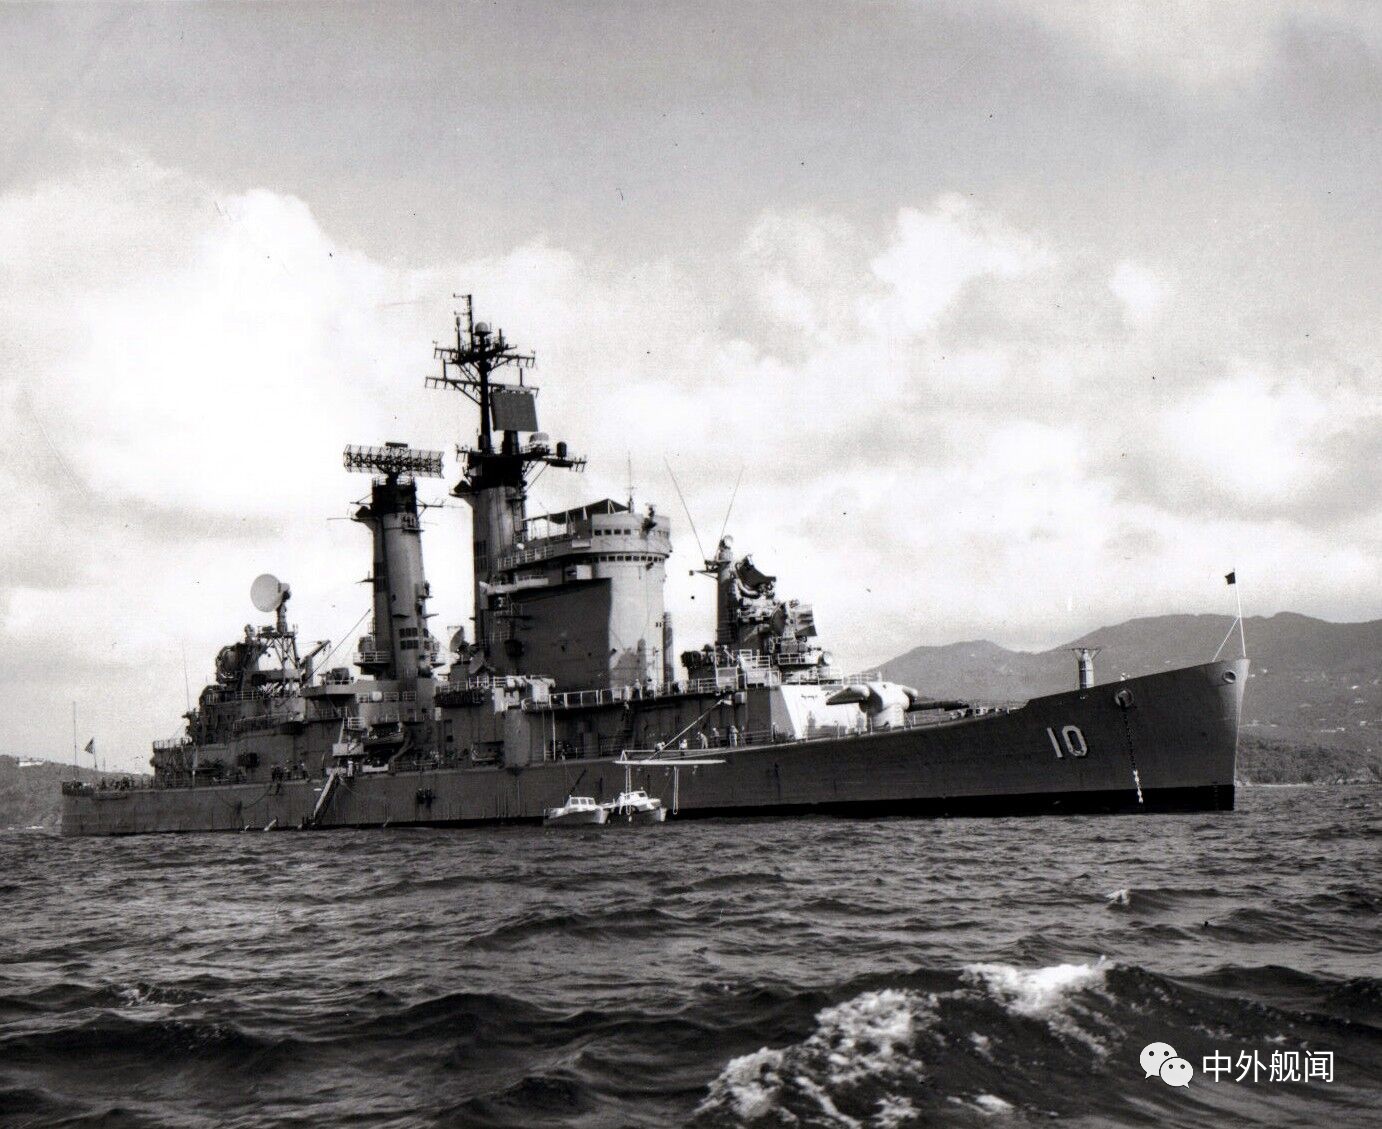 改装后的"奥尔巴尼"号导弹巡洋舰,之后按照这个标准改造的都统称为